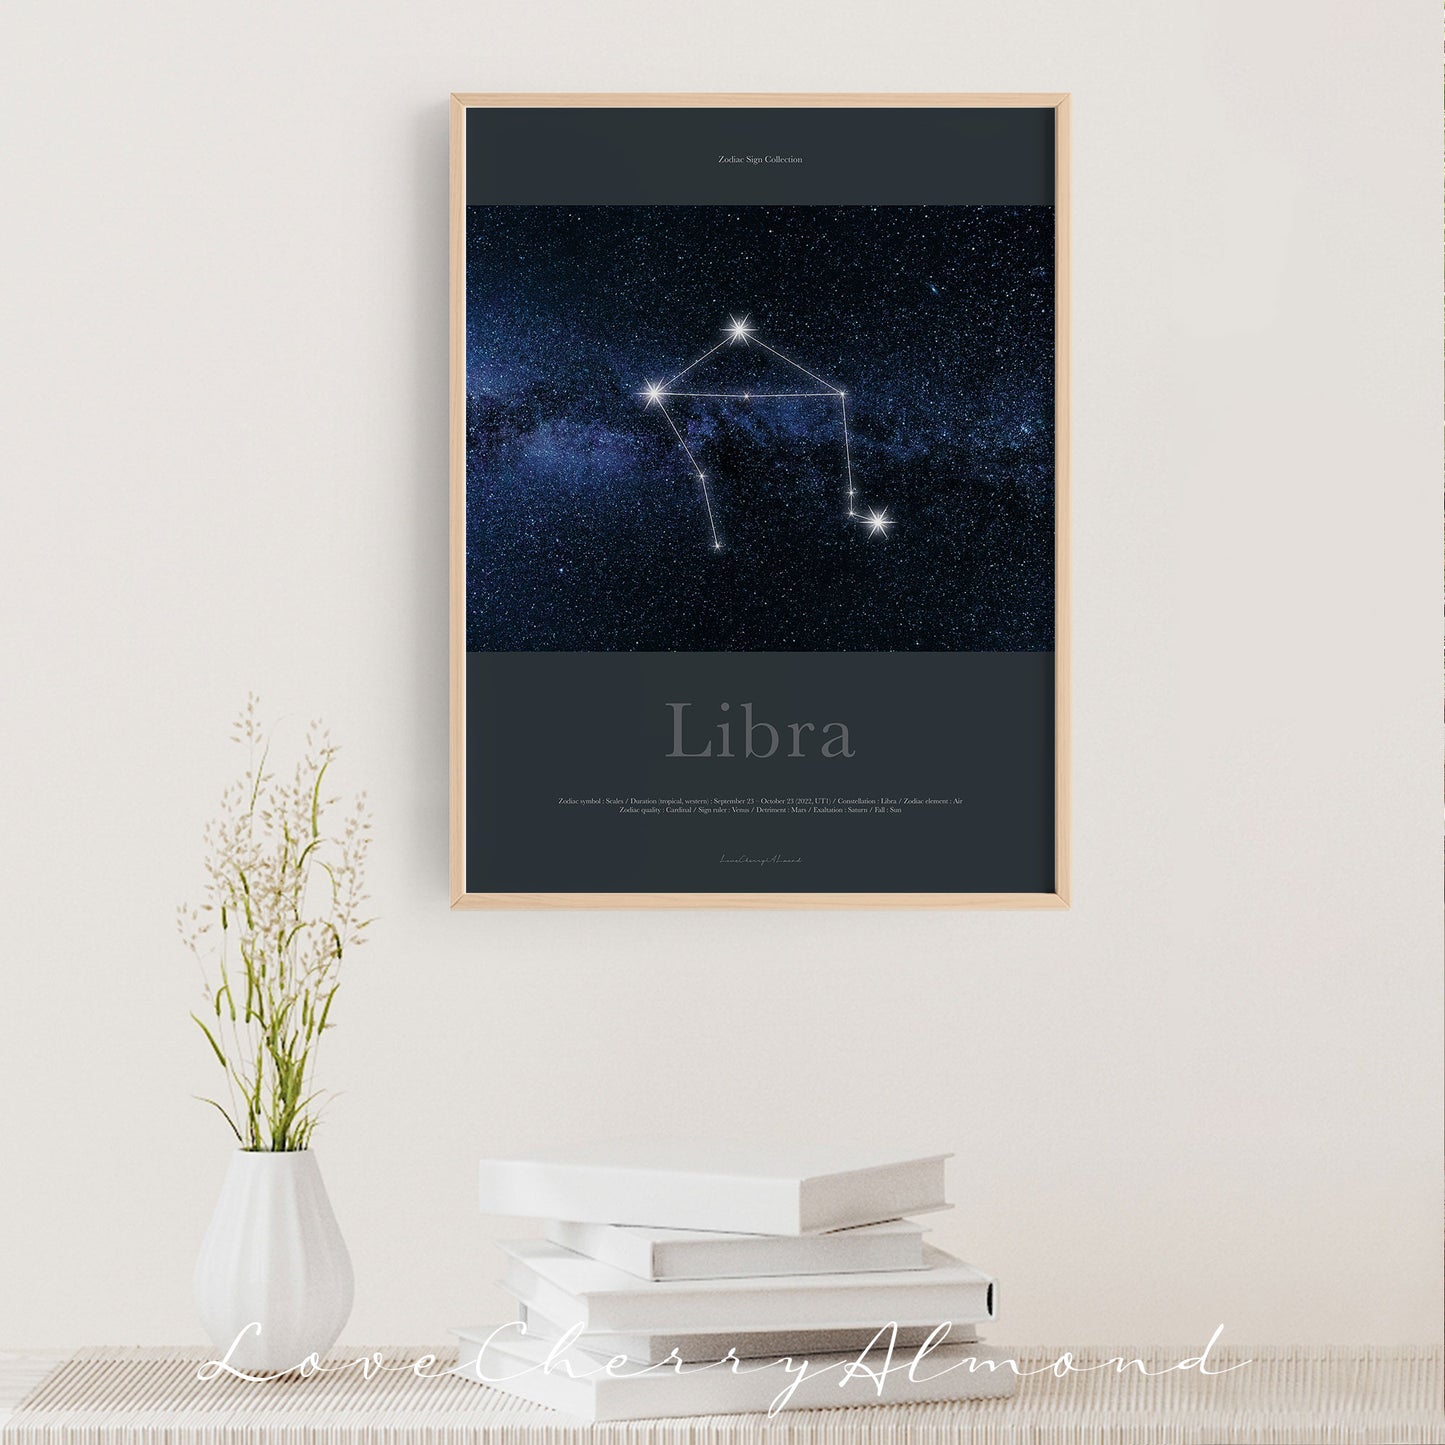 Zodiac Sign Collection "Libra"